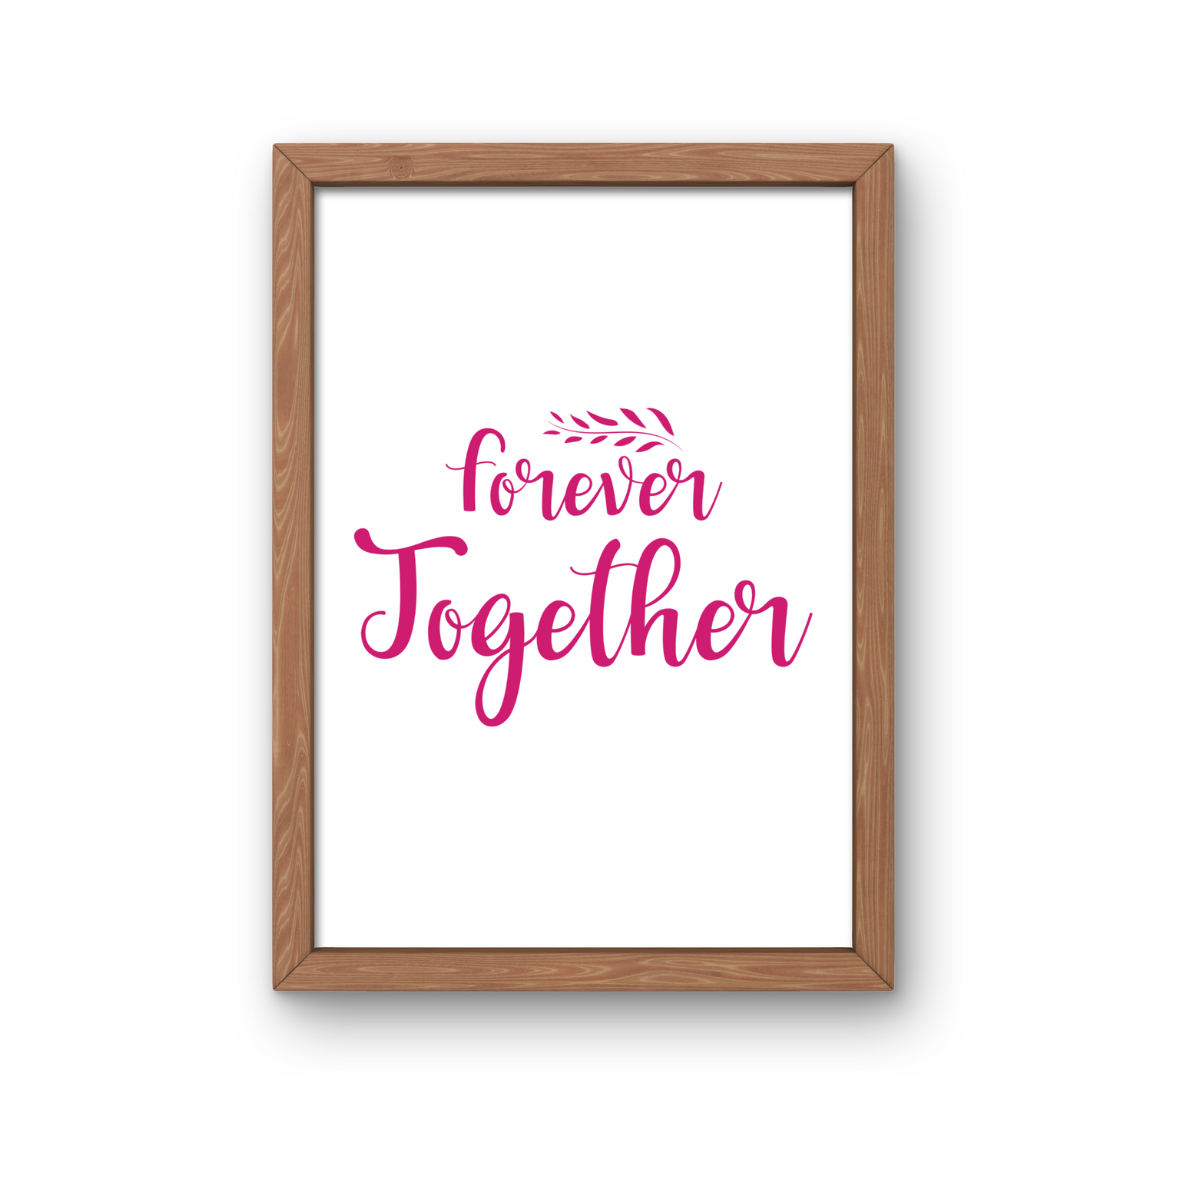 Forever Together SVG | Digital Download | Cut File | SVG Only The Sweet Stuff